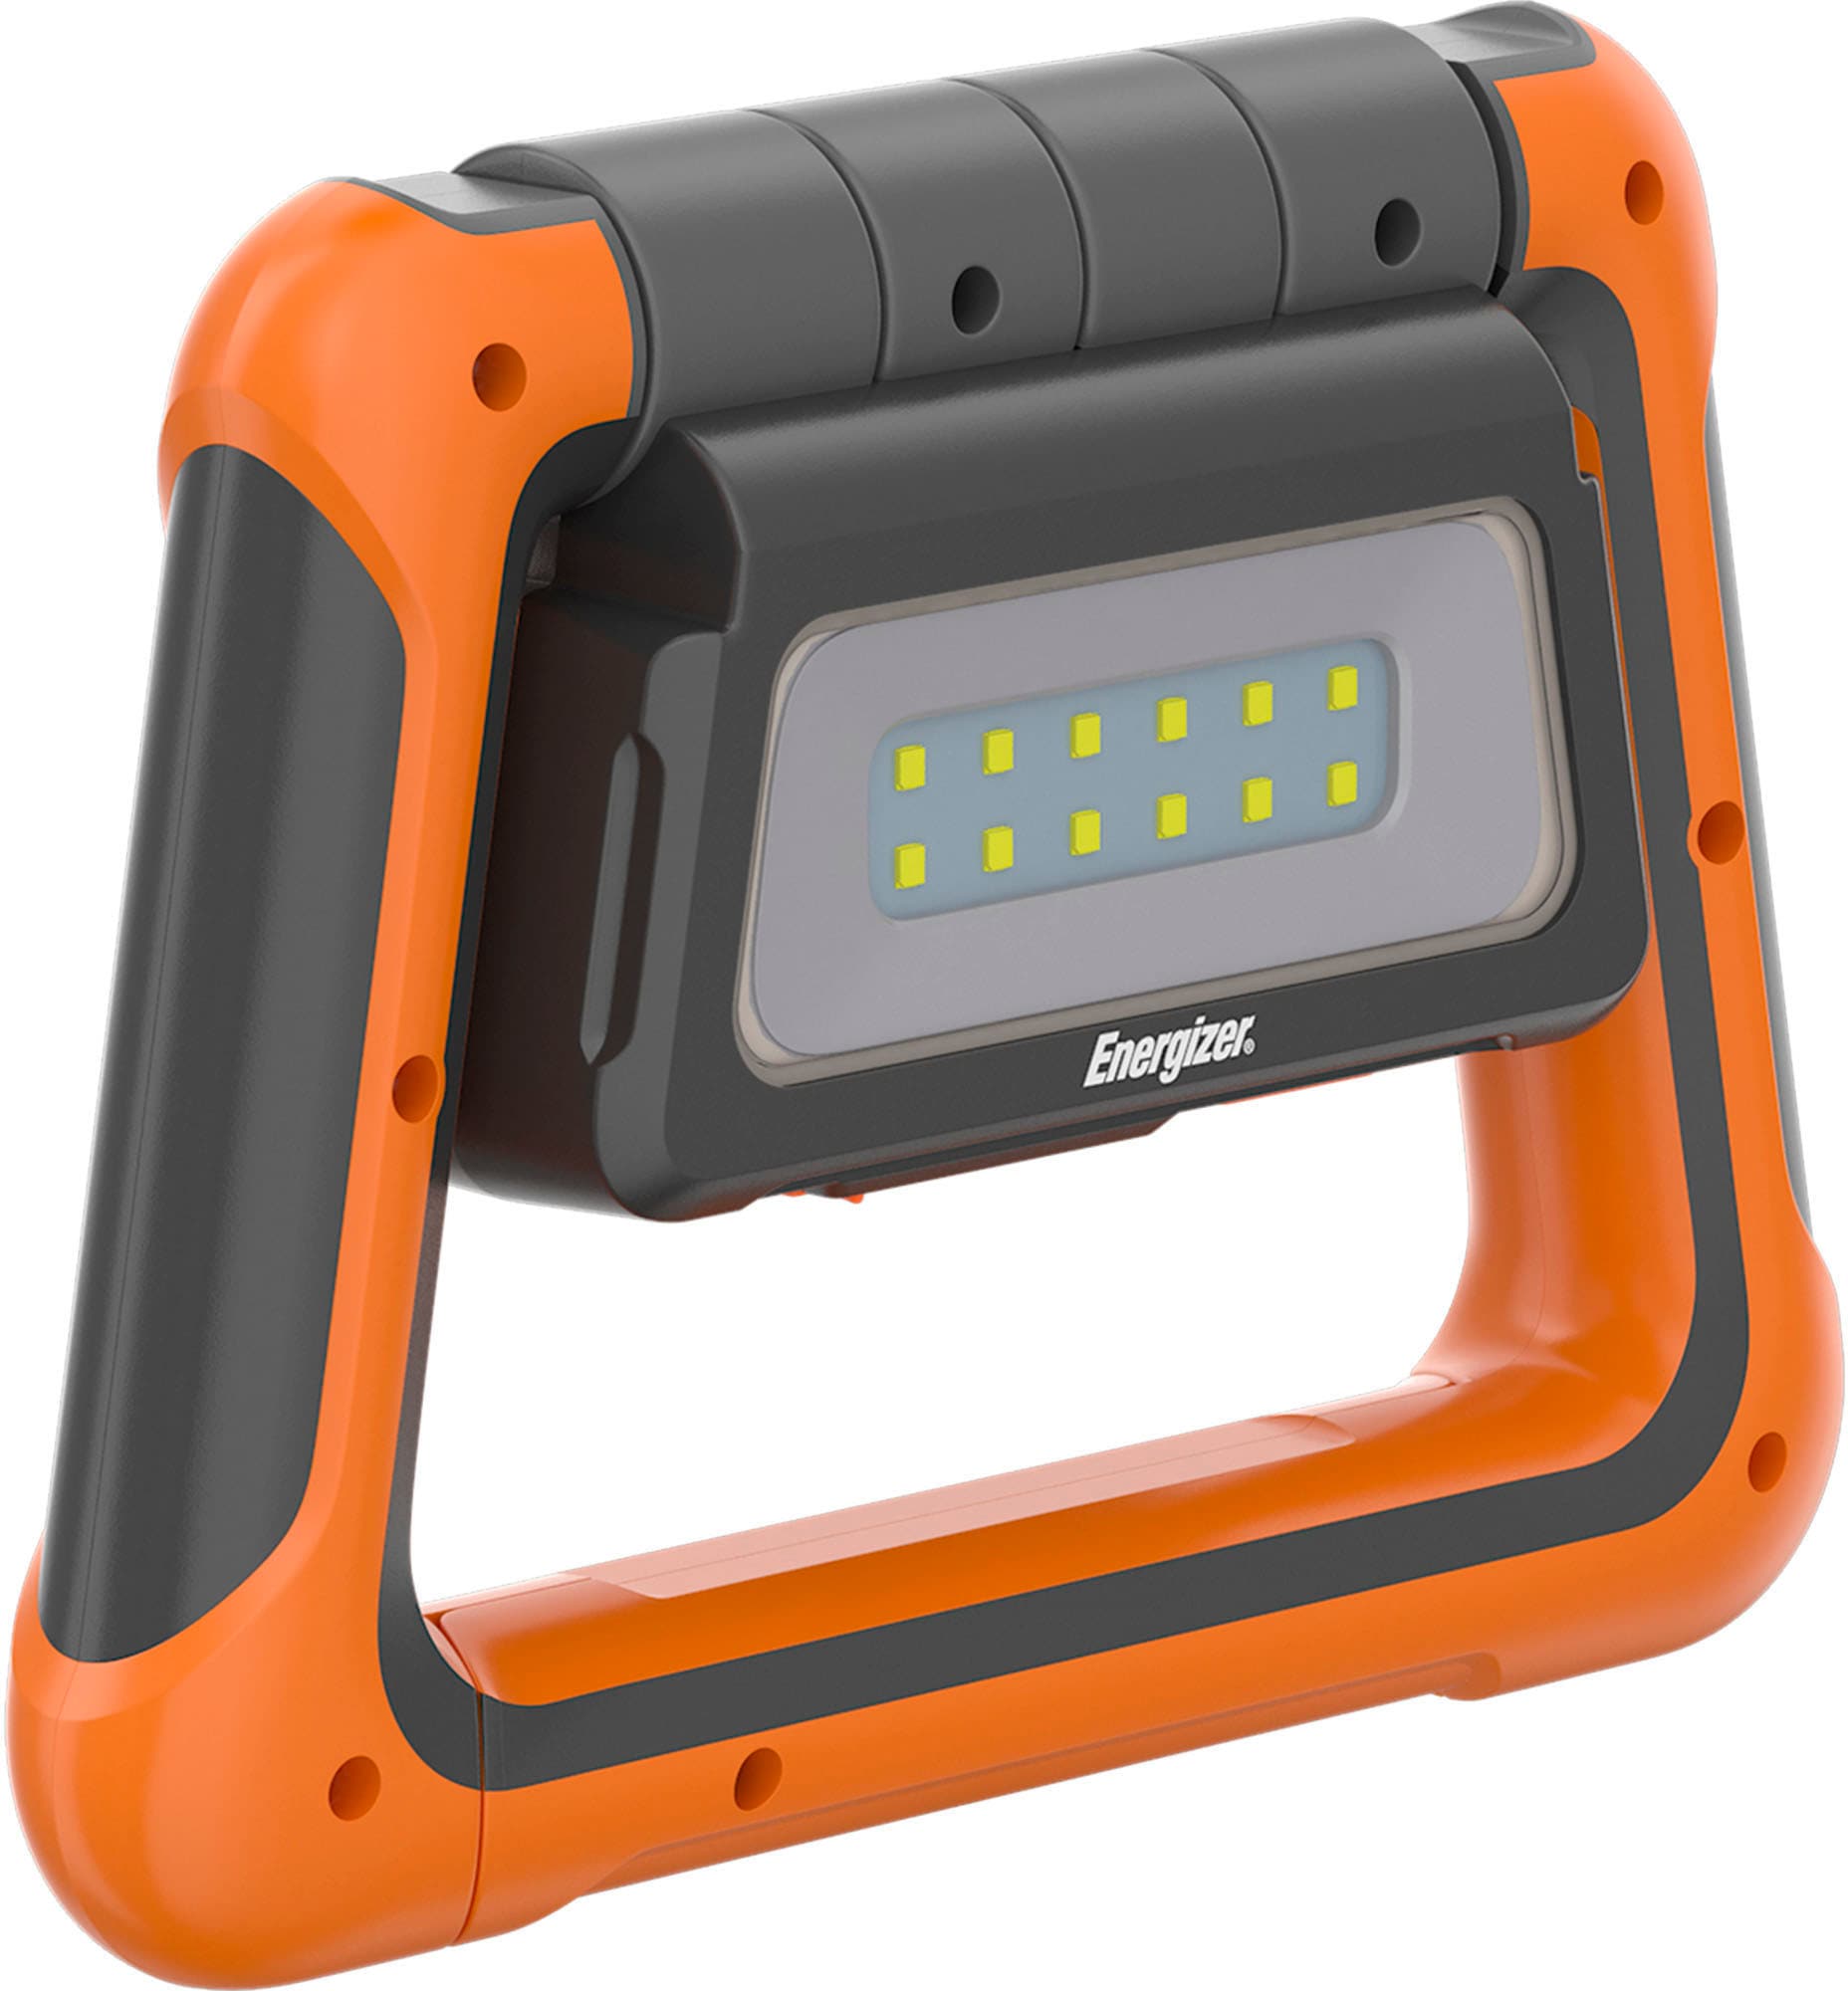 »Hardcase bestellen LED BAUR Energizer Taschenlampe Work Light« auf Rechnung | Versatile